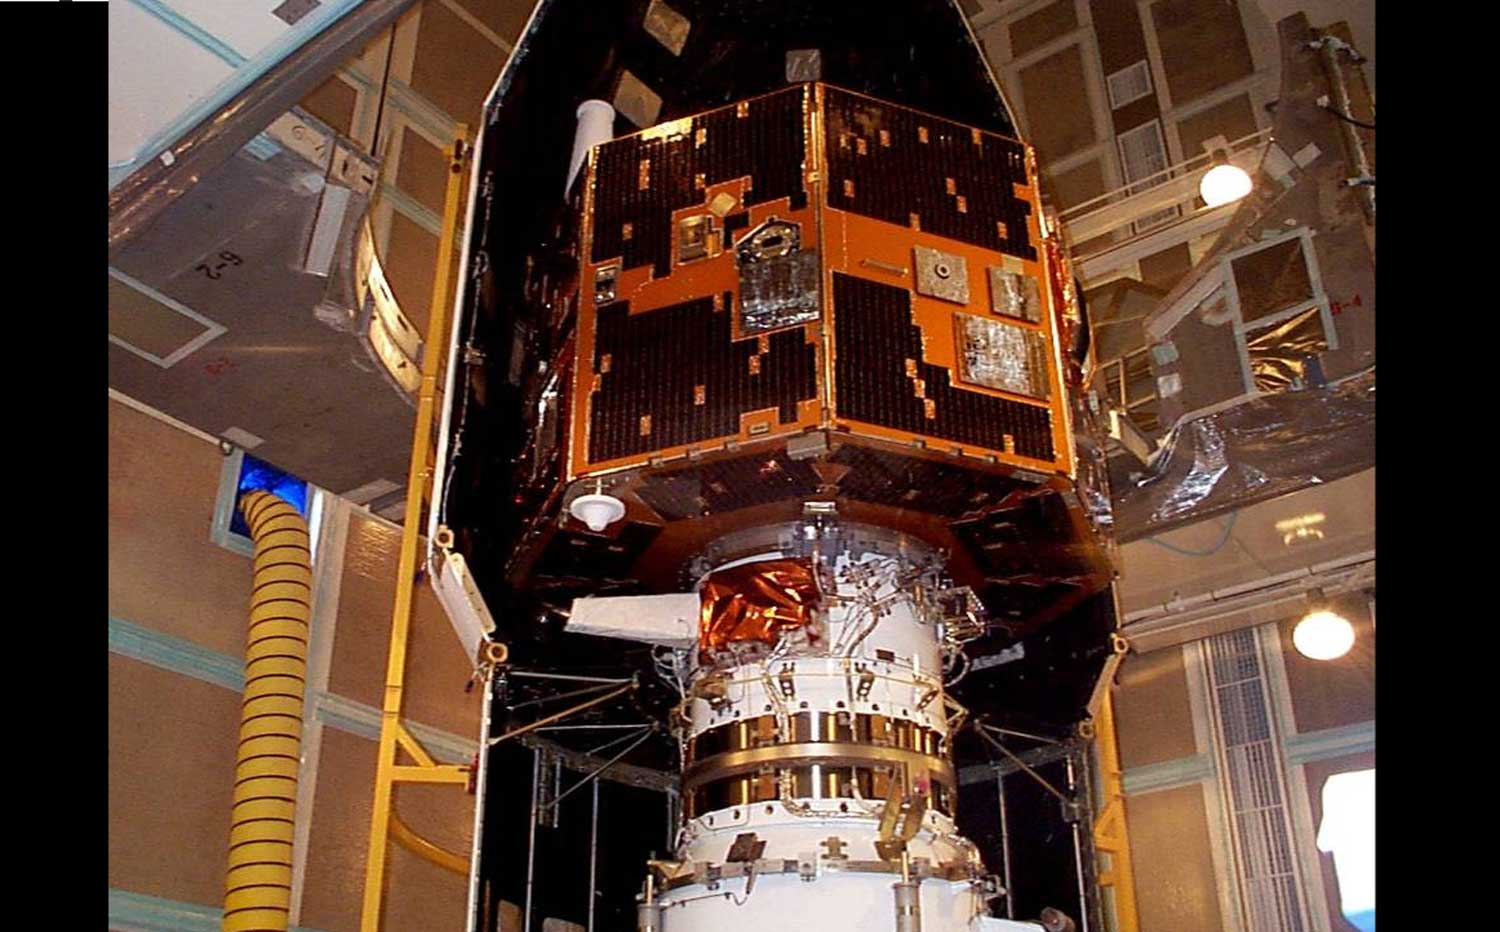 Verloren gewaande NASA-satelliet door amateur gespot